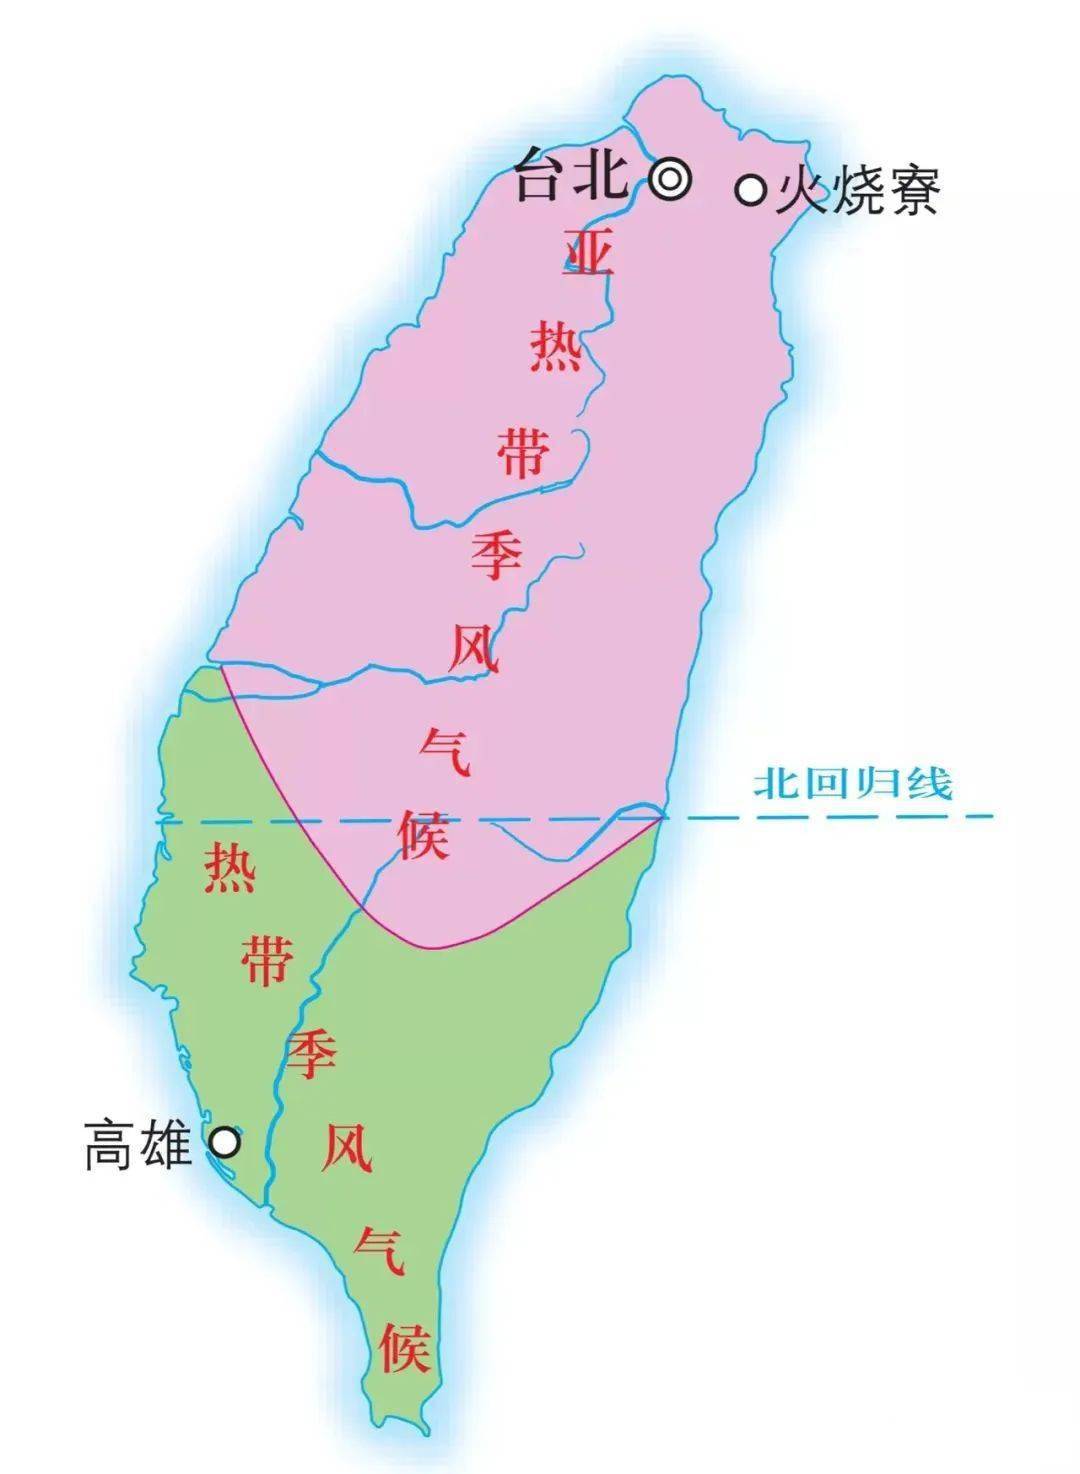 明郑时期台湾地图图片